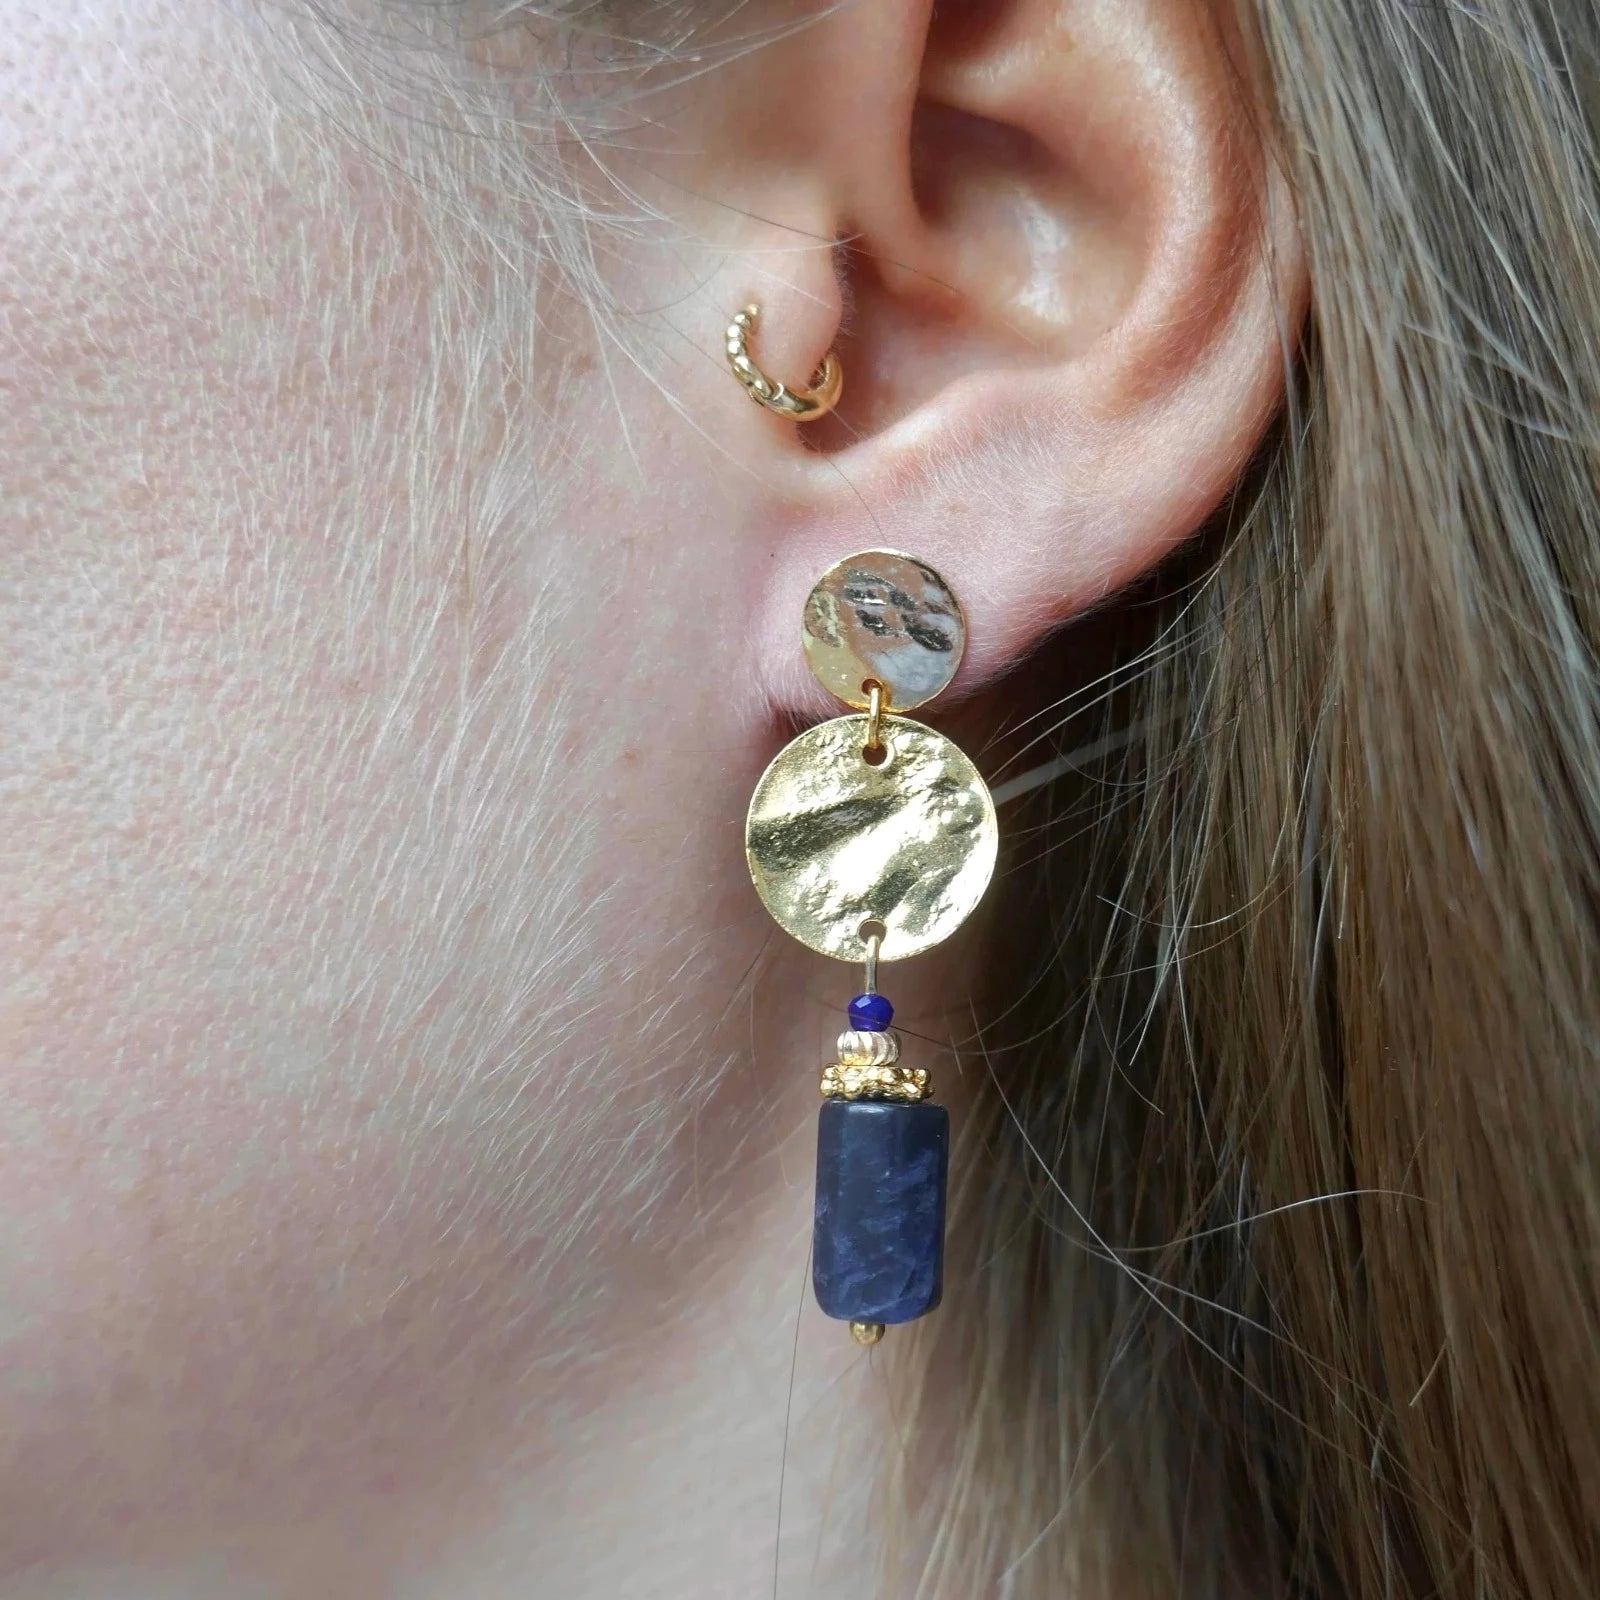 Boucles d'oreilles : notre sélection tendance - Marie Claire